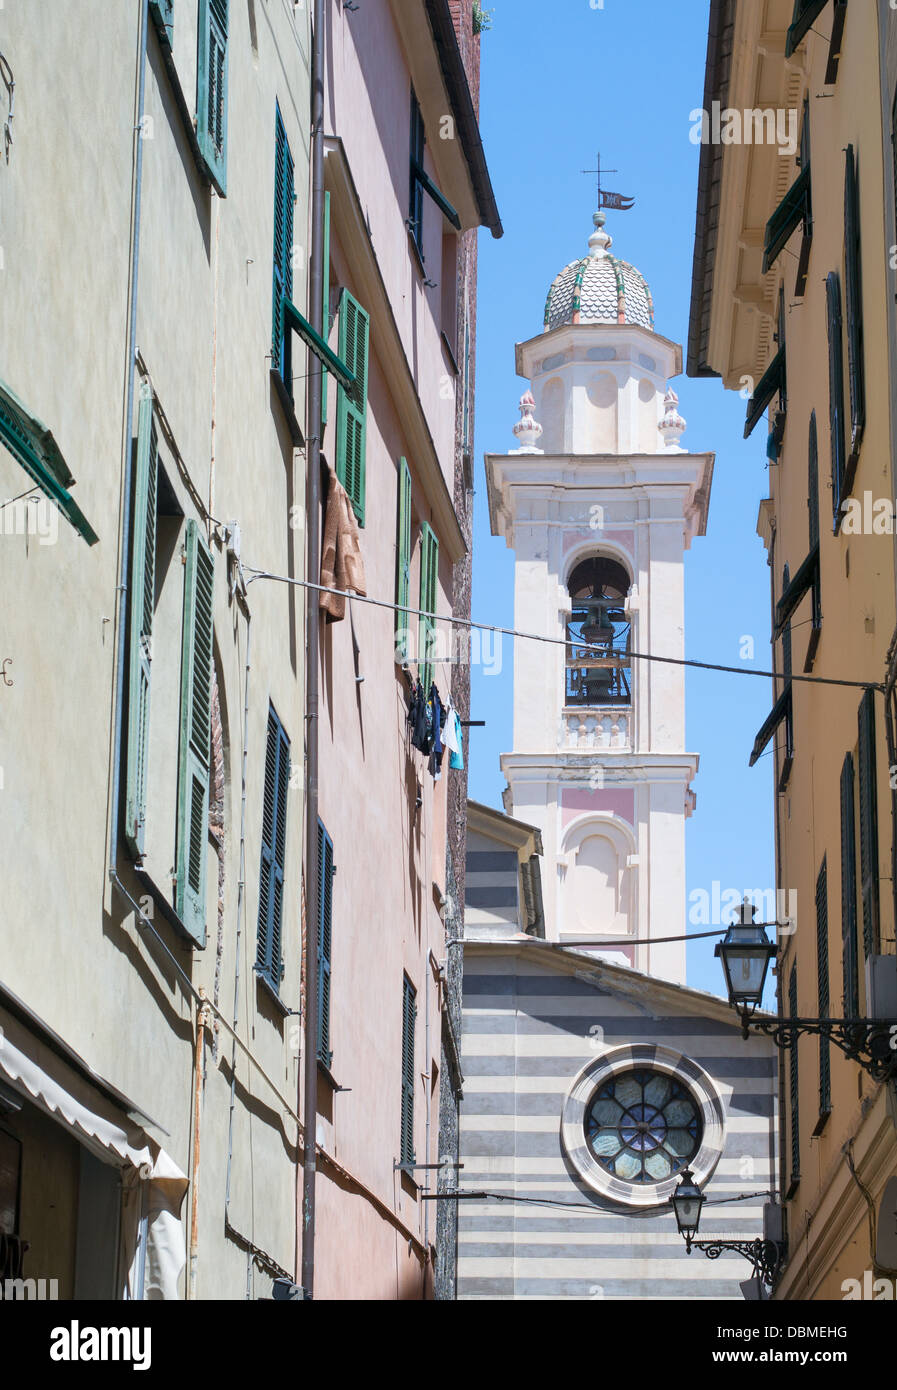 Clocher de l'église St Maria vu le long d'une rue étroite dans le nord de l'historique ville italienne d'Albenga. Banque D'Images